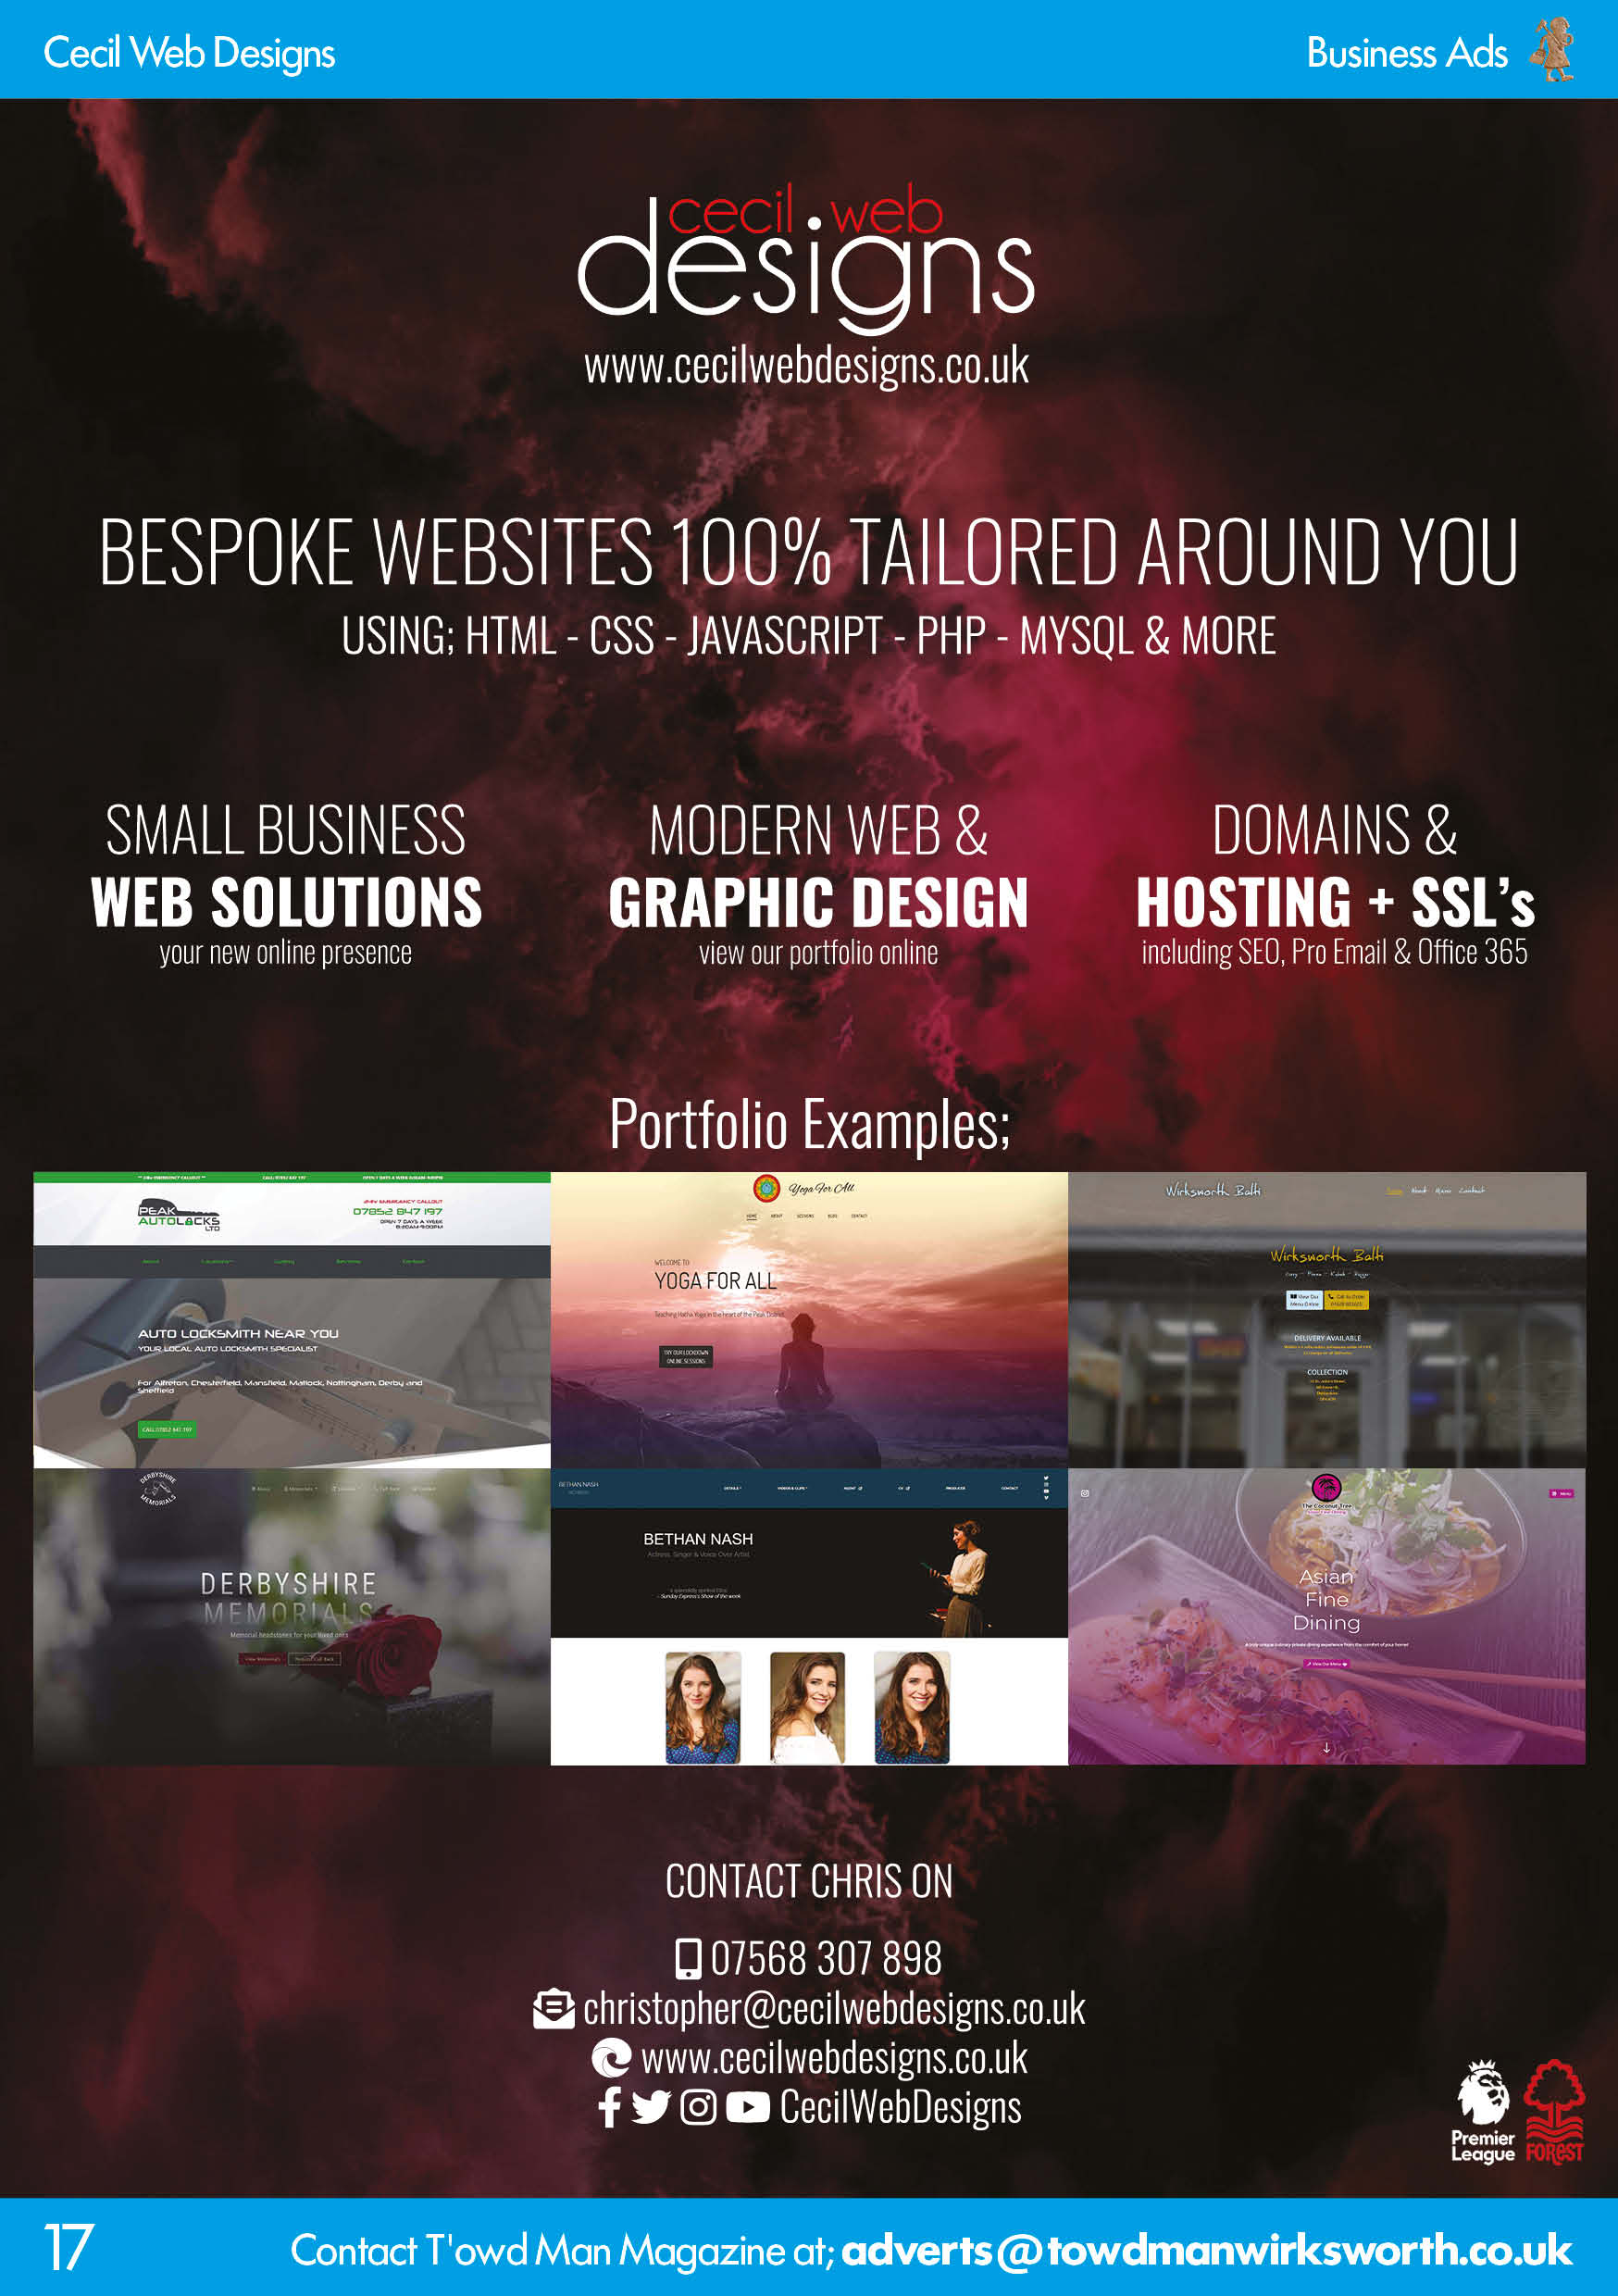 Cecil Web Designs